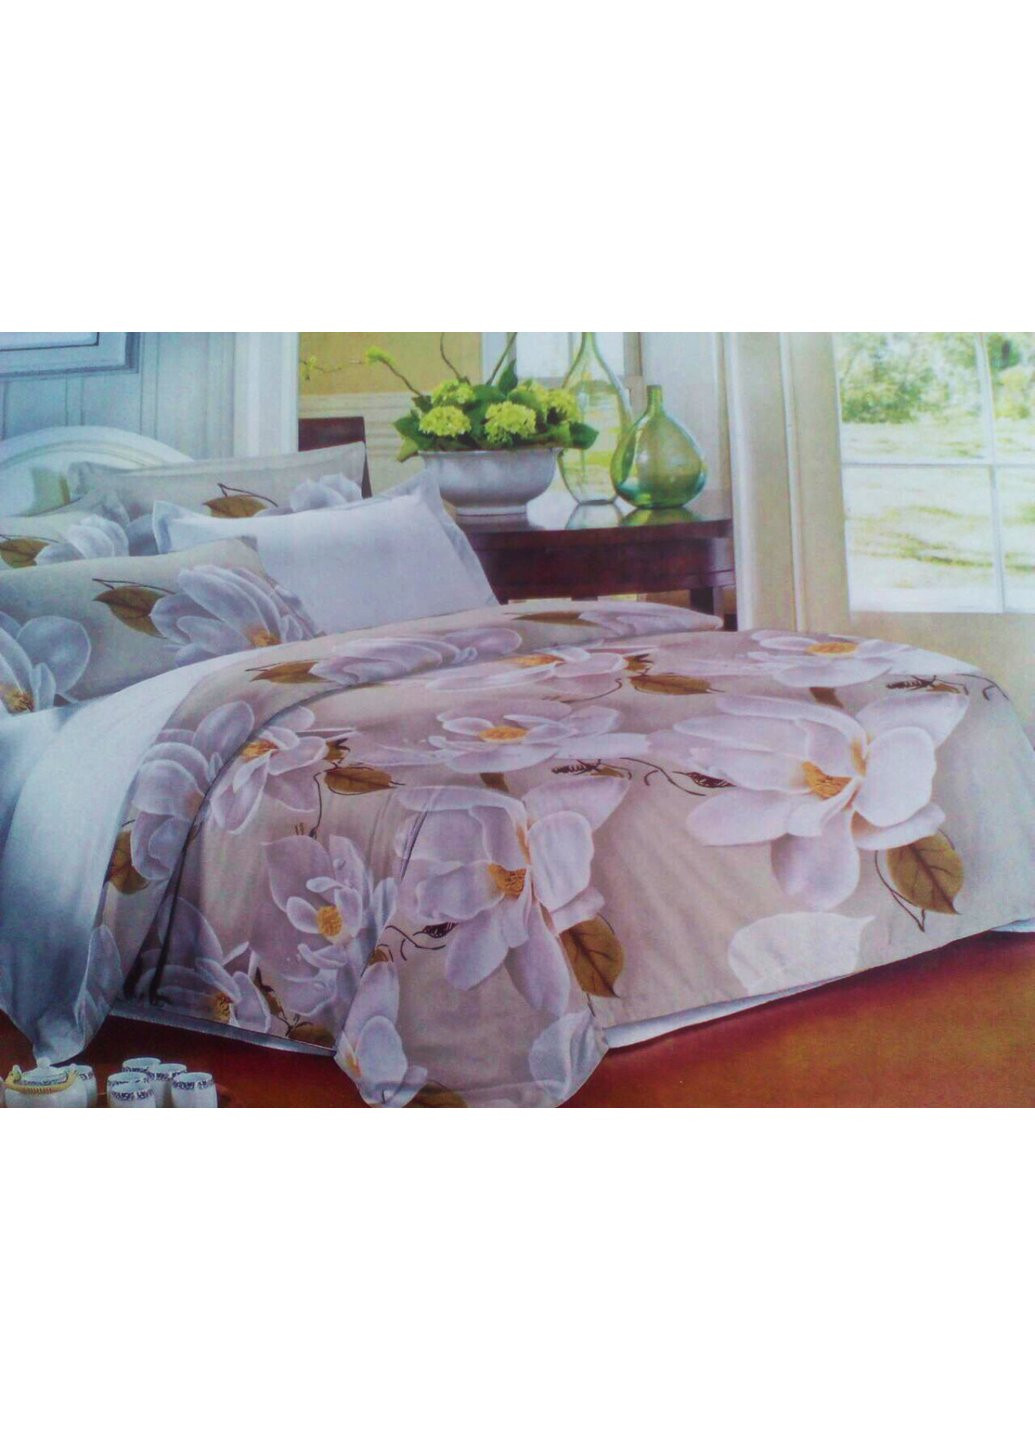 Комплект постельного белья от украинского производителя Polycotton Двуспальный 90913 Moda (254782726)